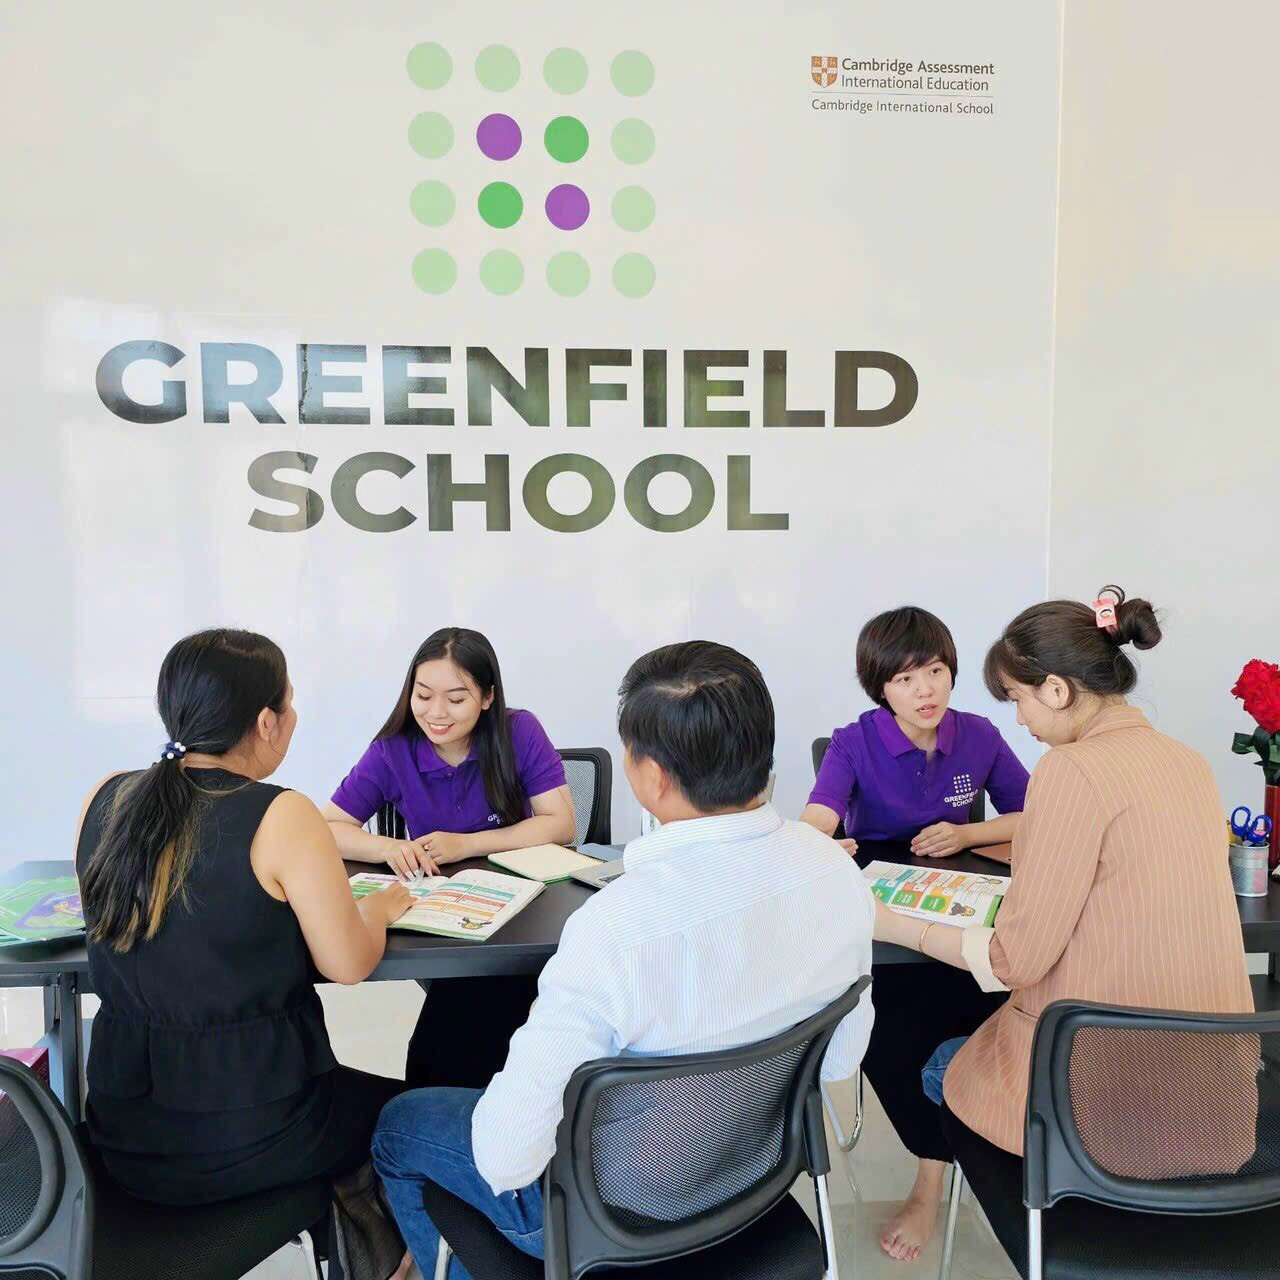 greenfield school Đồng Nai đang tuyển sinh